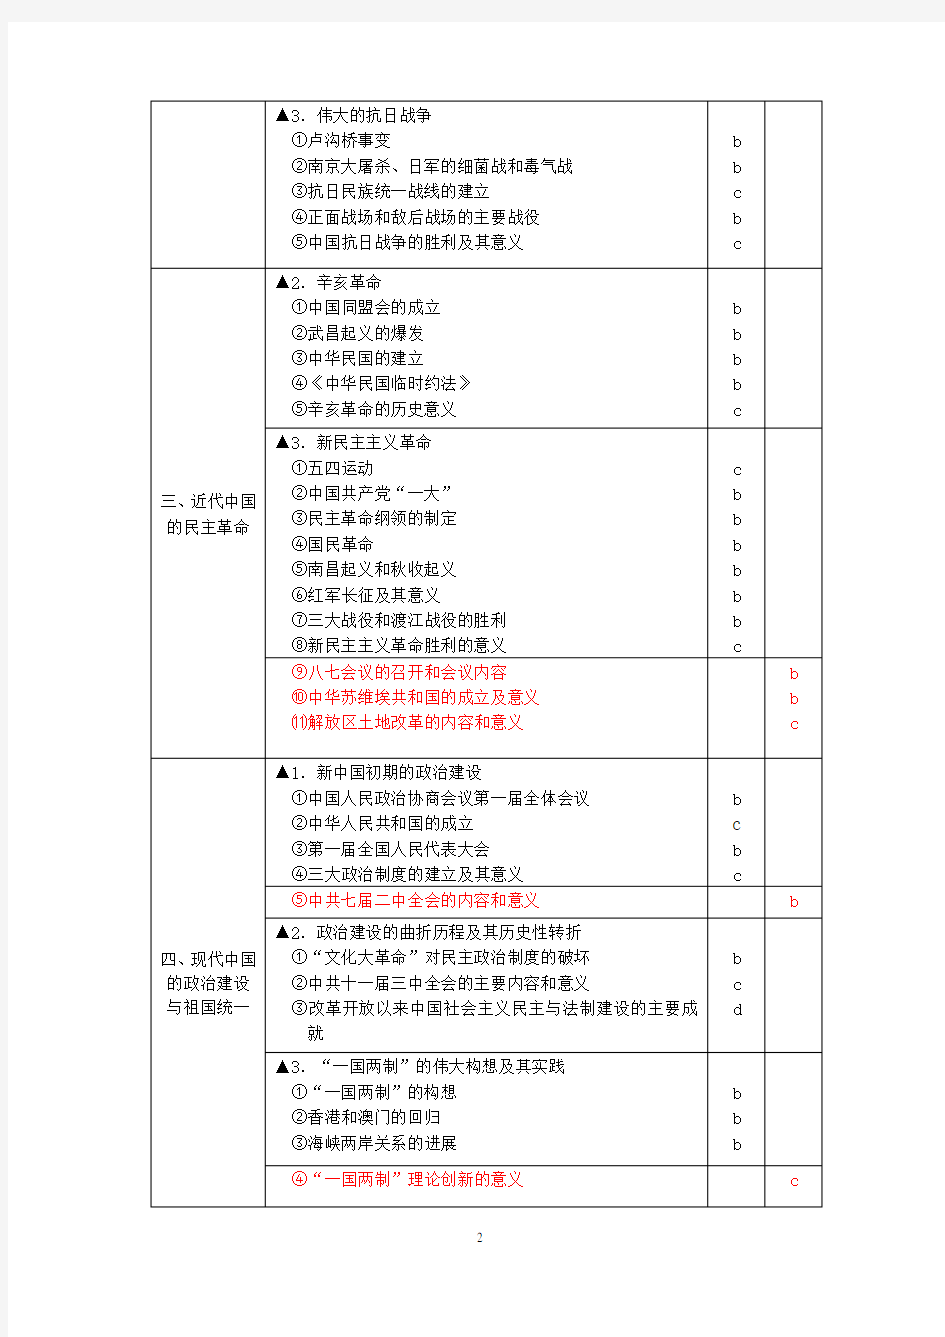 (新高考)浙江省高中历史学考+选考标准(命题范围完整版)解析